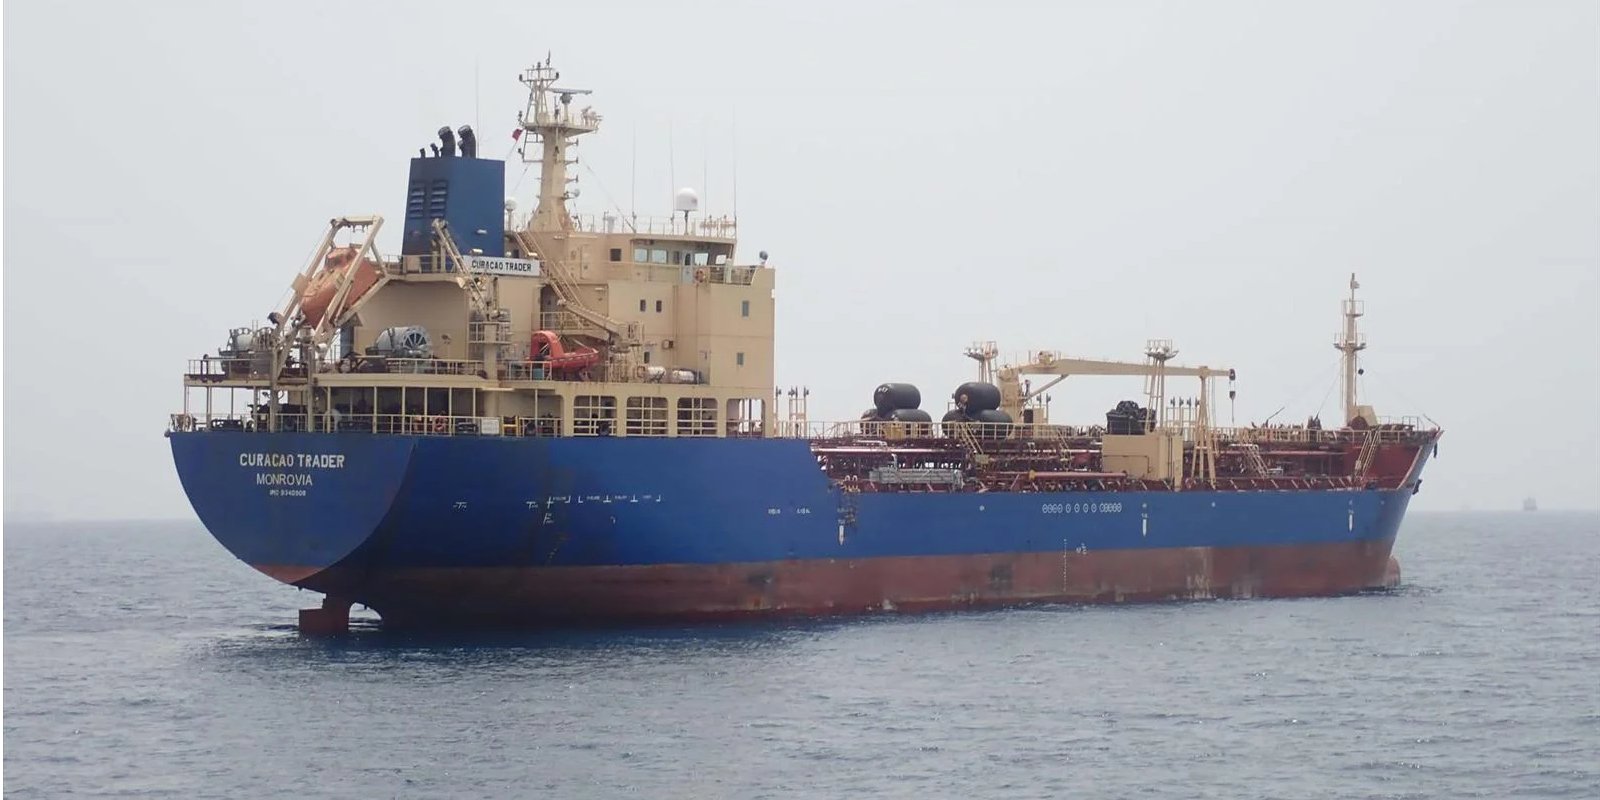 Пираты захватили танкер Curacao Trader в Гвинейском заливе у берегов Нигерии. Обновлено 1